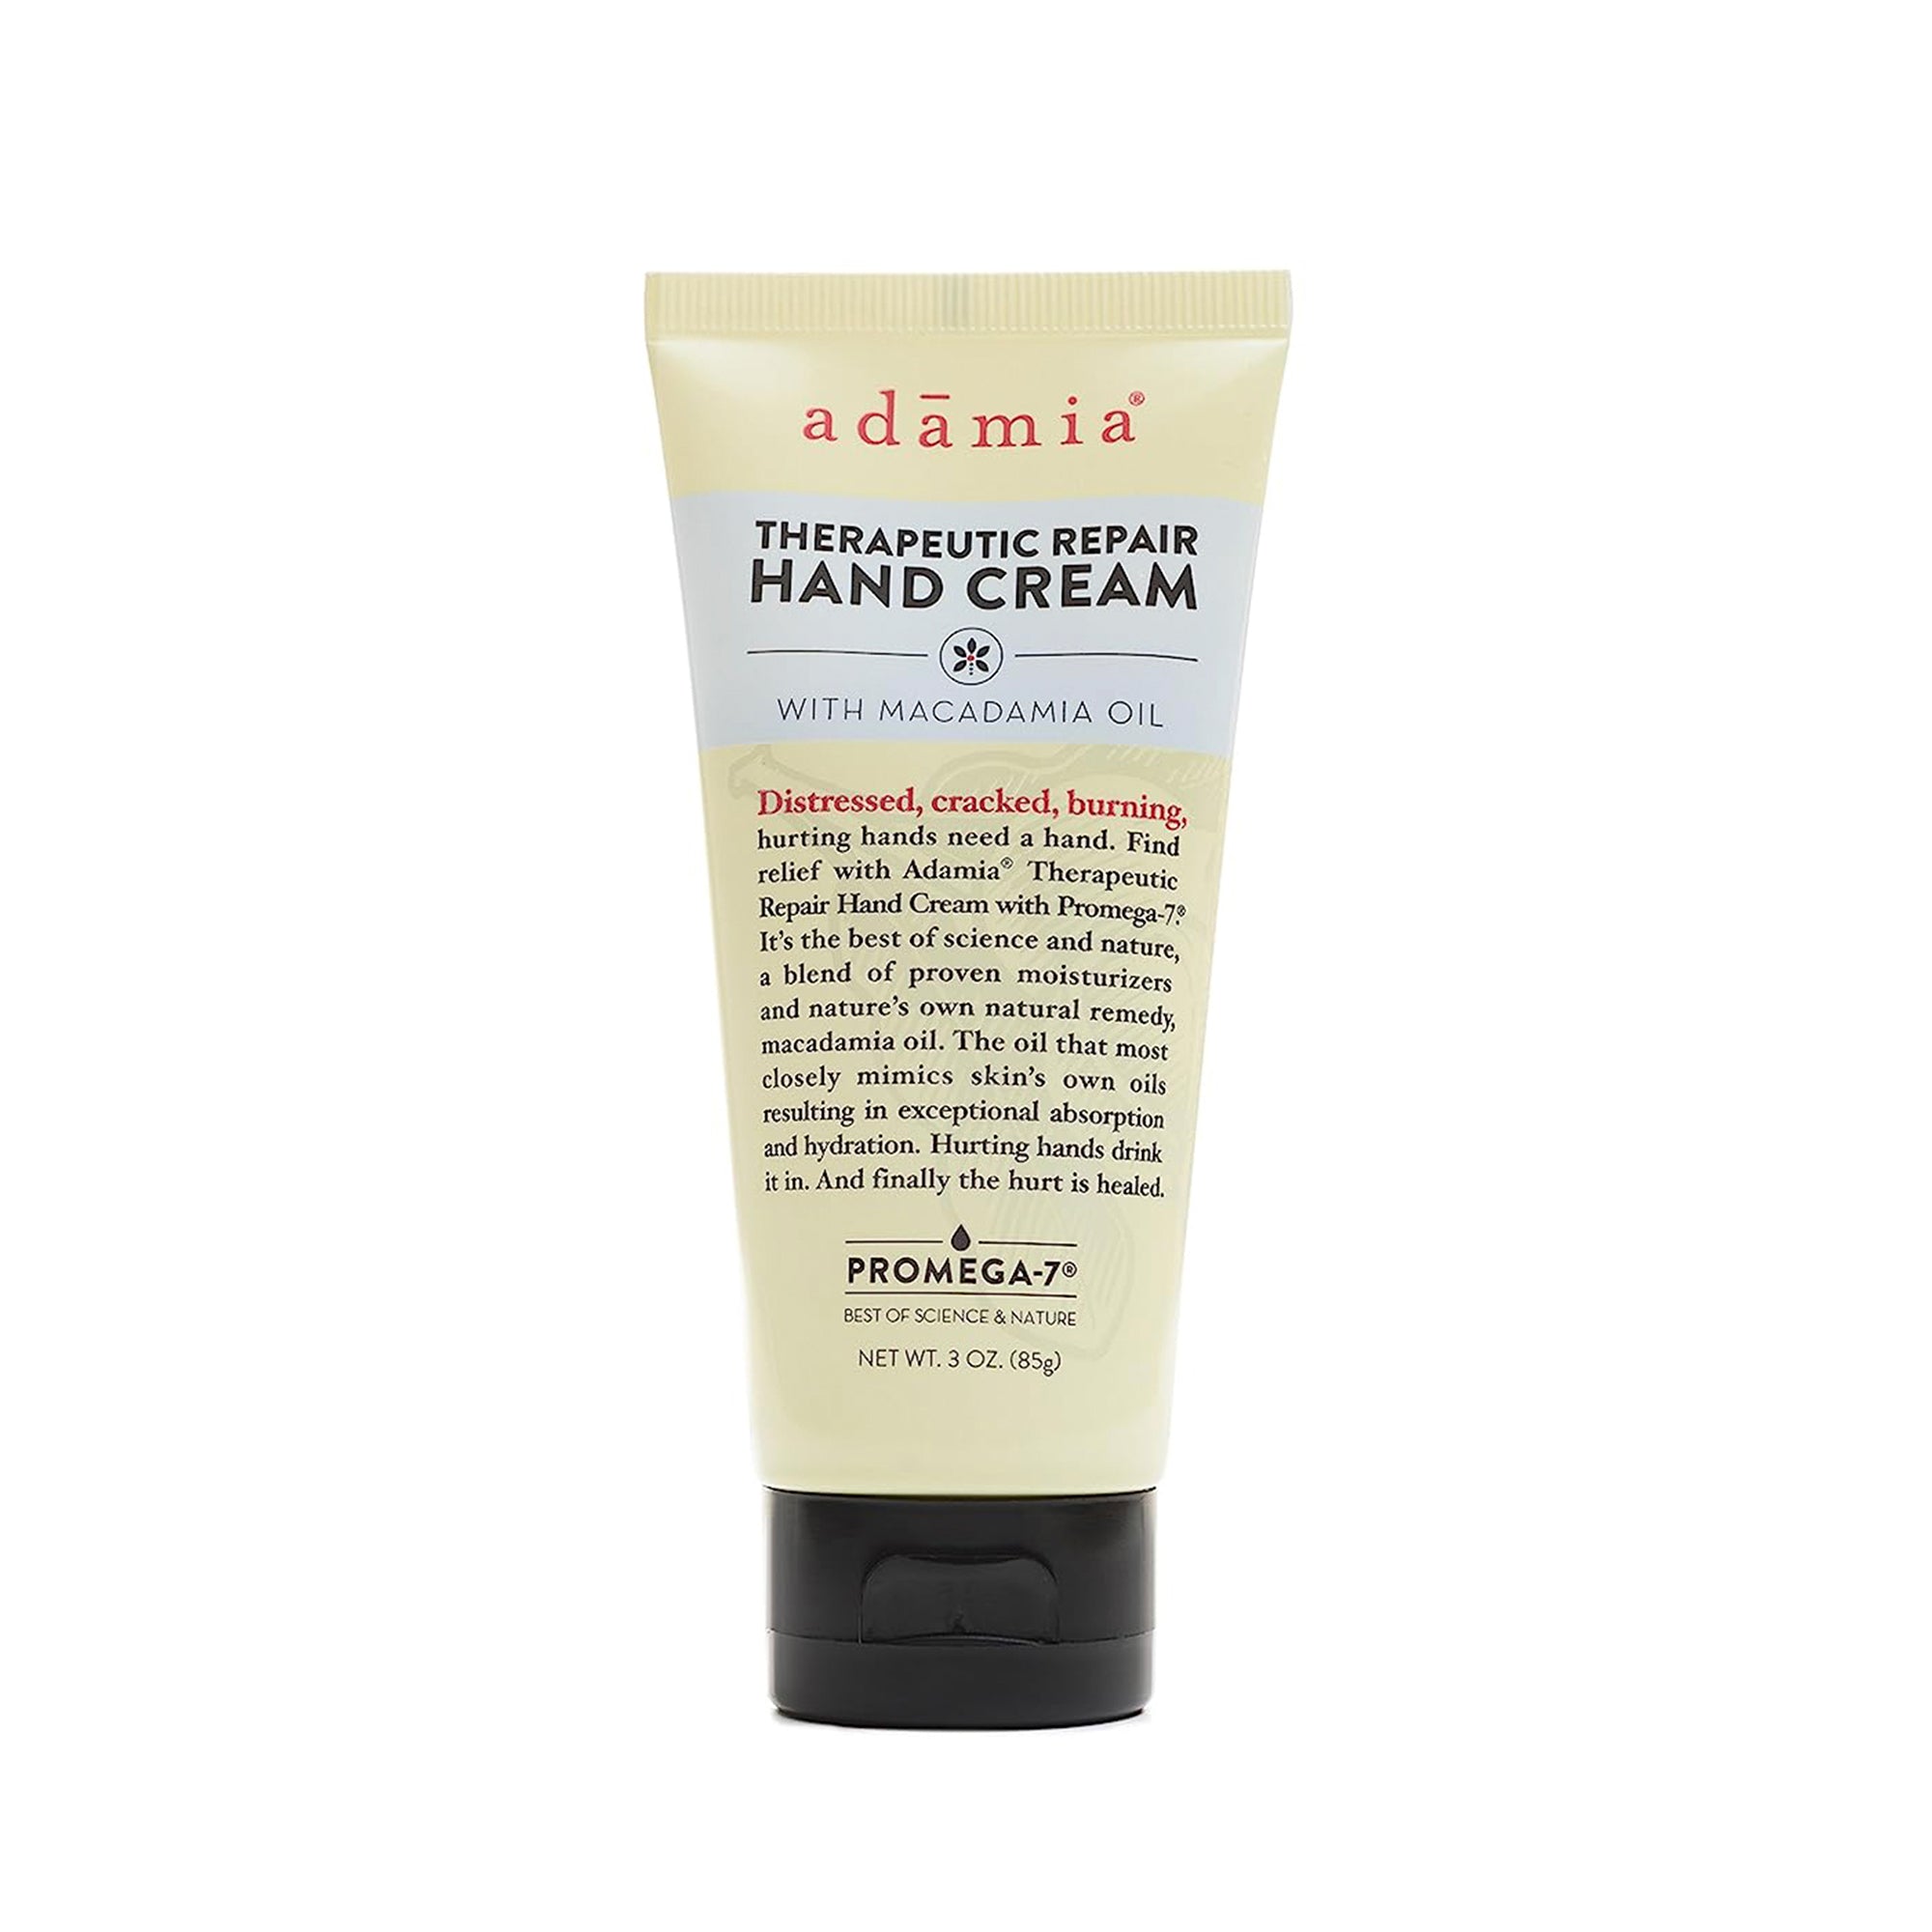 Adamia Therapeutic Repair Hand Cream with Macadamia Nut Oil 3 oz